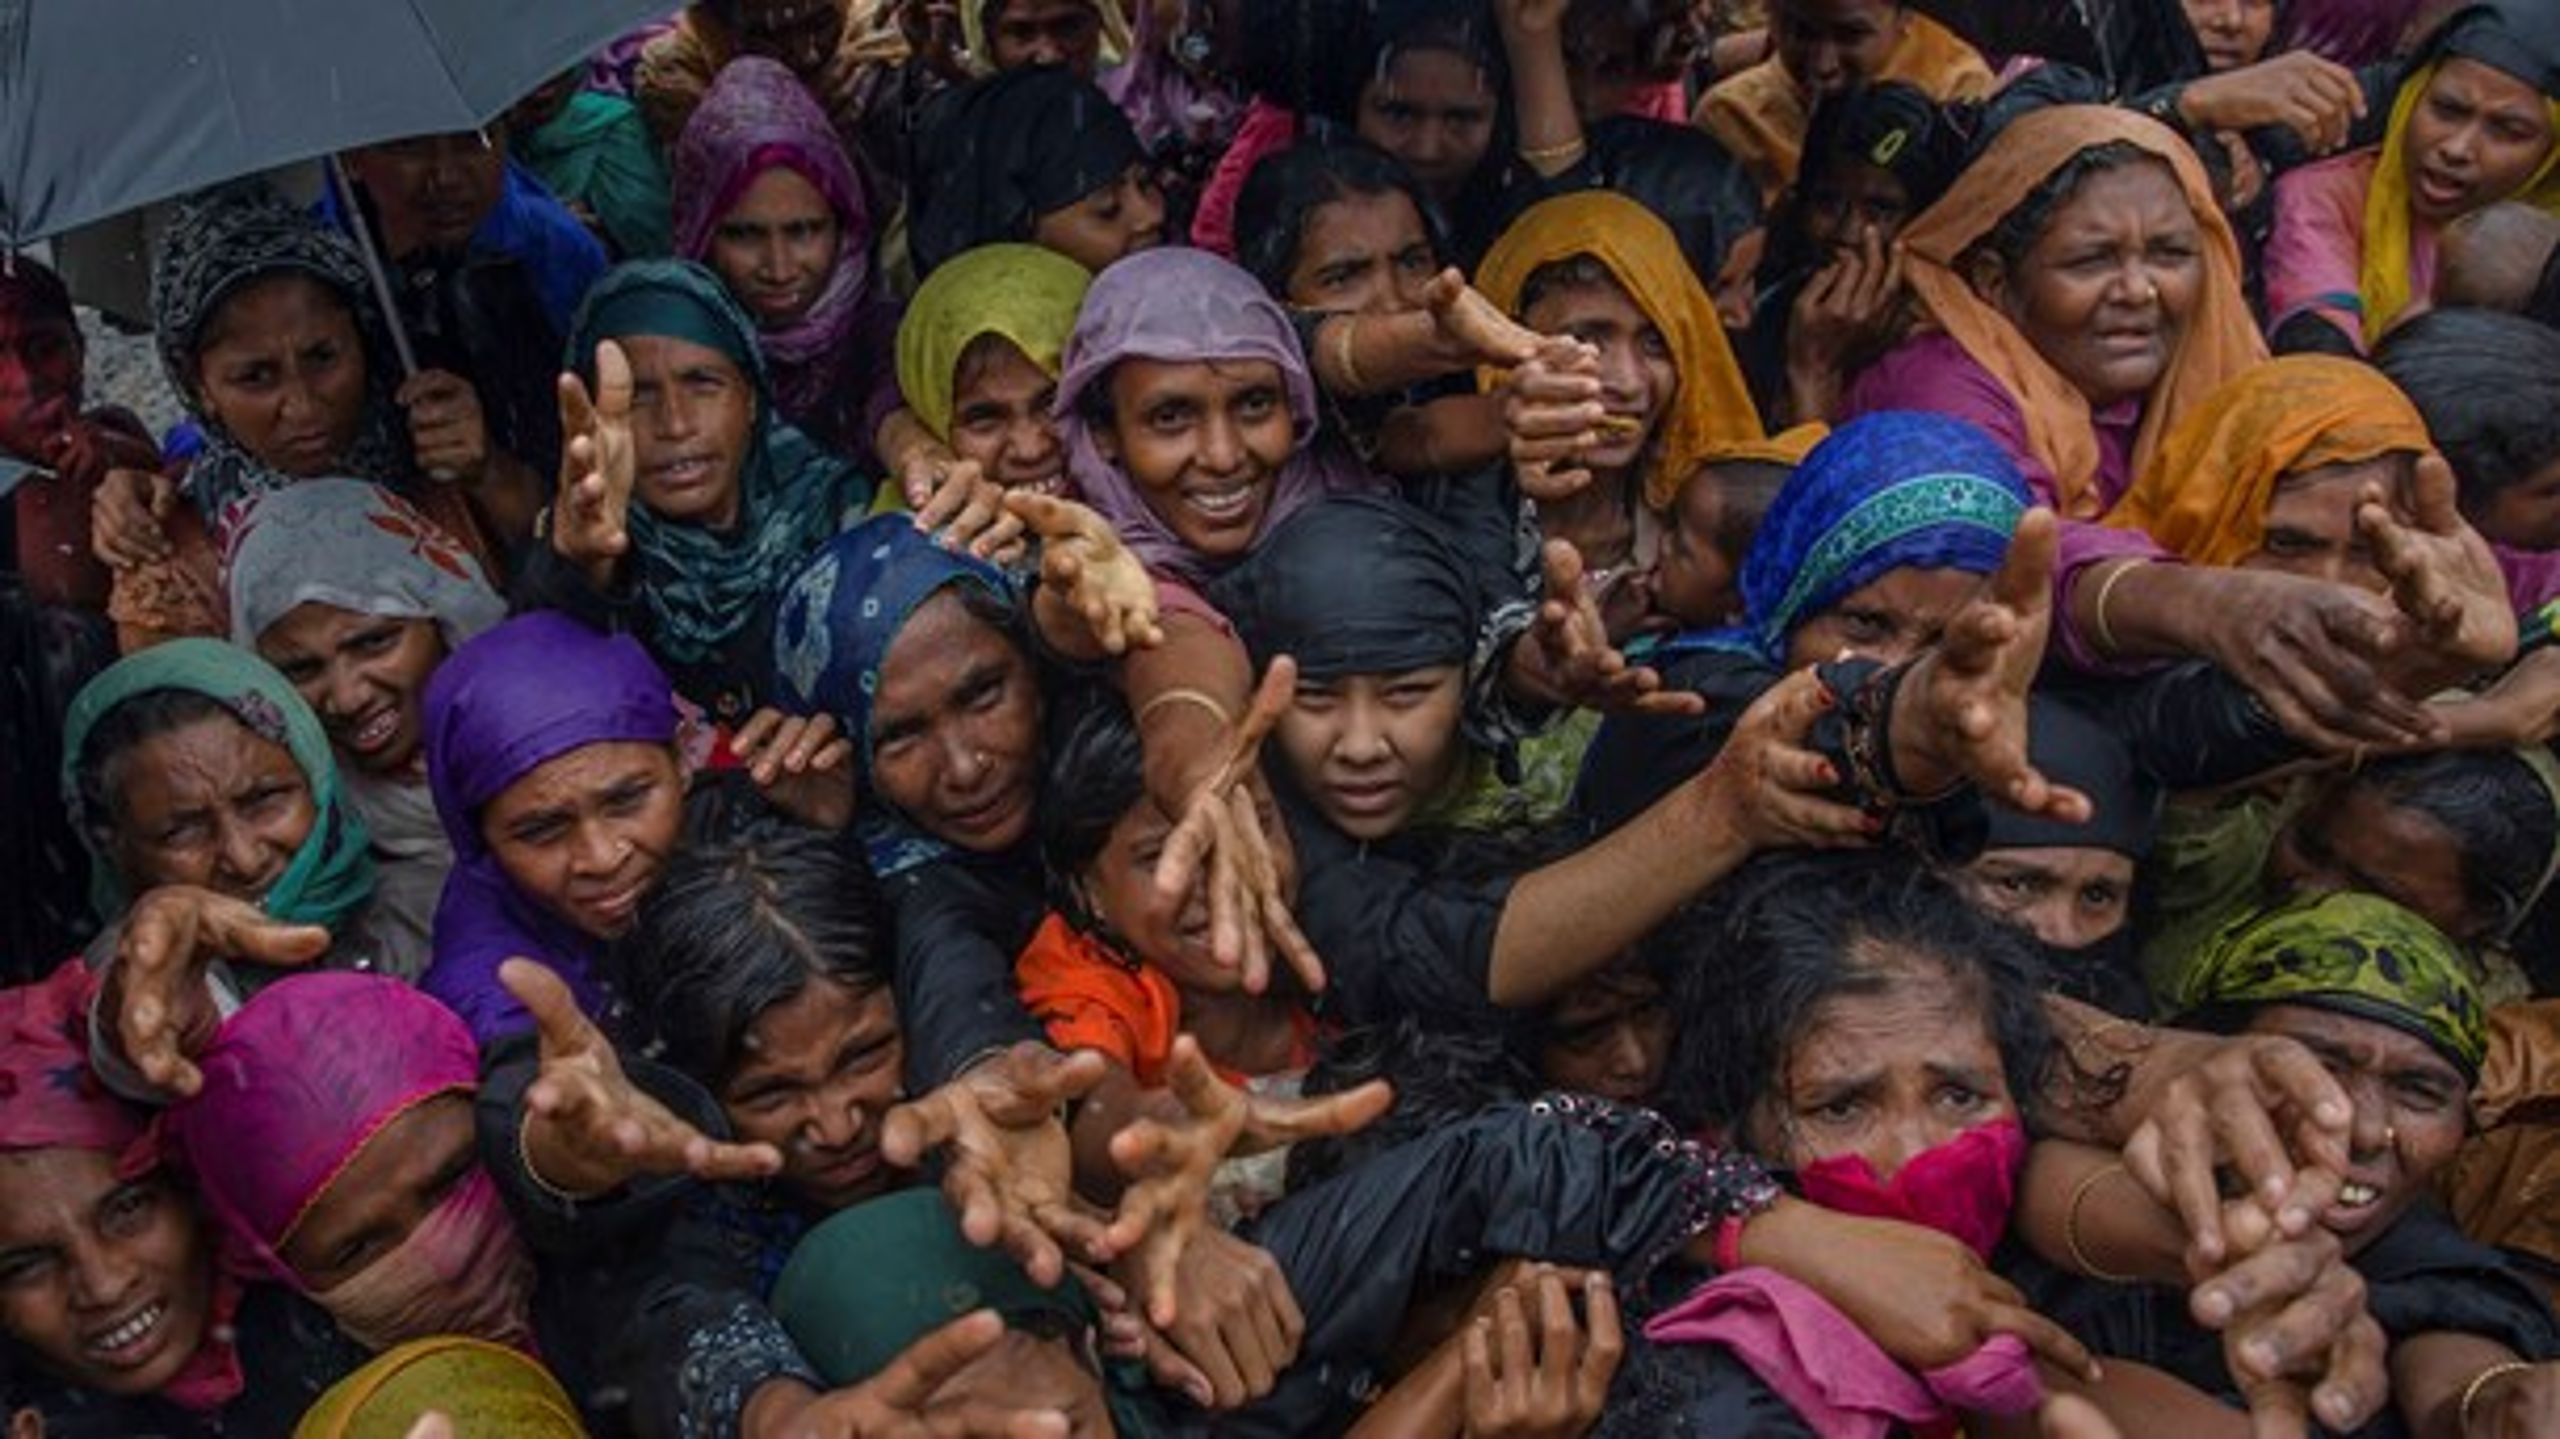 I 2017 var propaganda, trusler og voldskoordinering på Facebook medvirkende til en decideret etnisk udrensning af rohingya-mindretallet i Myanmar, skriver Frederik Stjernfelt og Anne Mette Lauritzen (På billedet: Rohingya-kvinder, der er flygtet til Bangladesh).